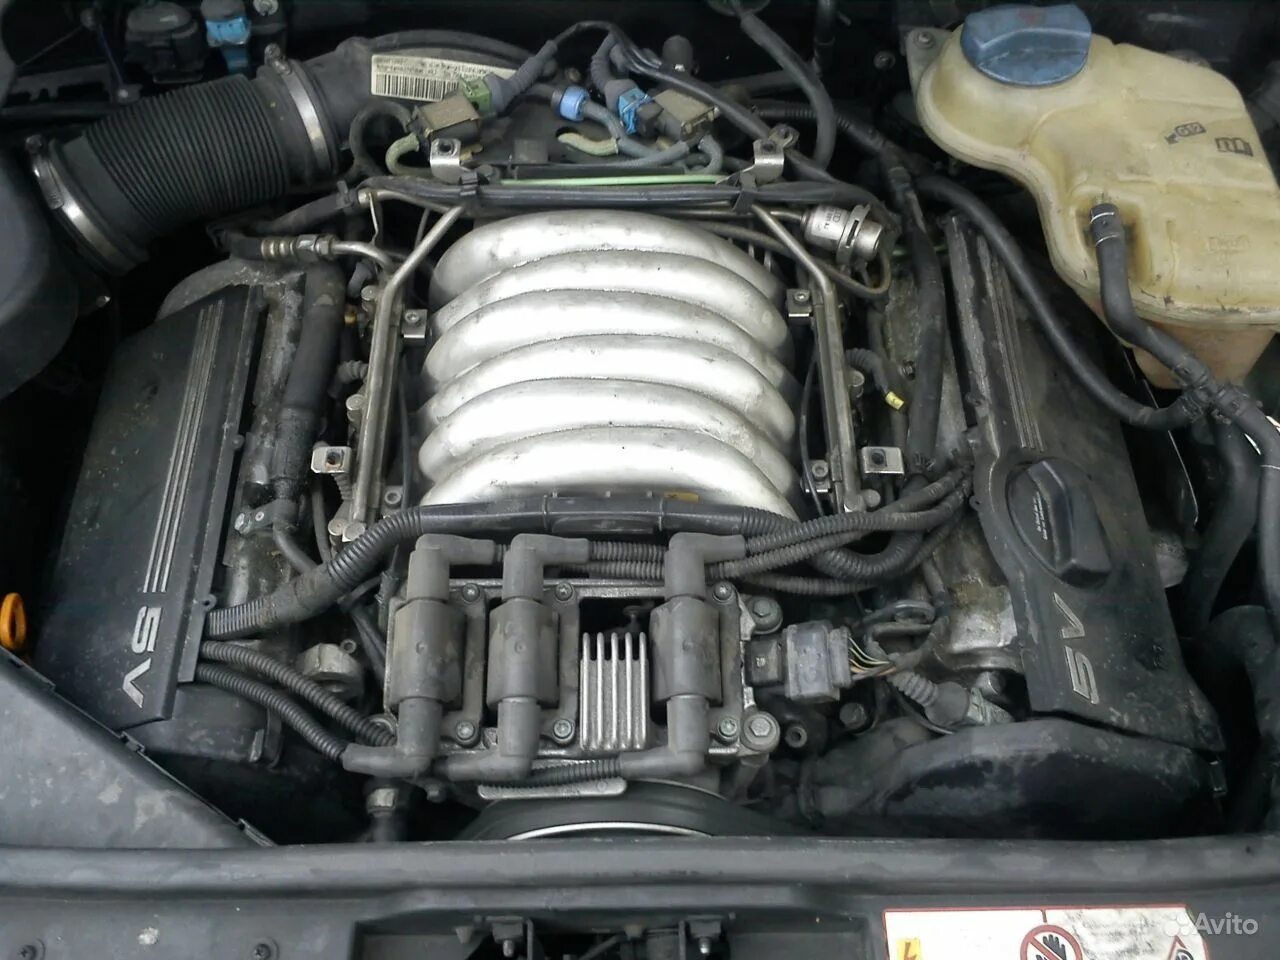 Двигателя ауди а6 с5 2.4. Ауди а 6 с5 мотор 2.4. Audi a6 2.6 v6 1996. Двигатель Ауди Alf 2.4. Двигатель Ауди а6 с5 2.4 Alf.